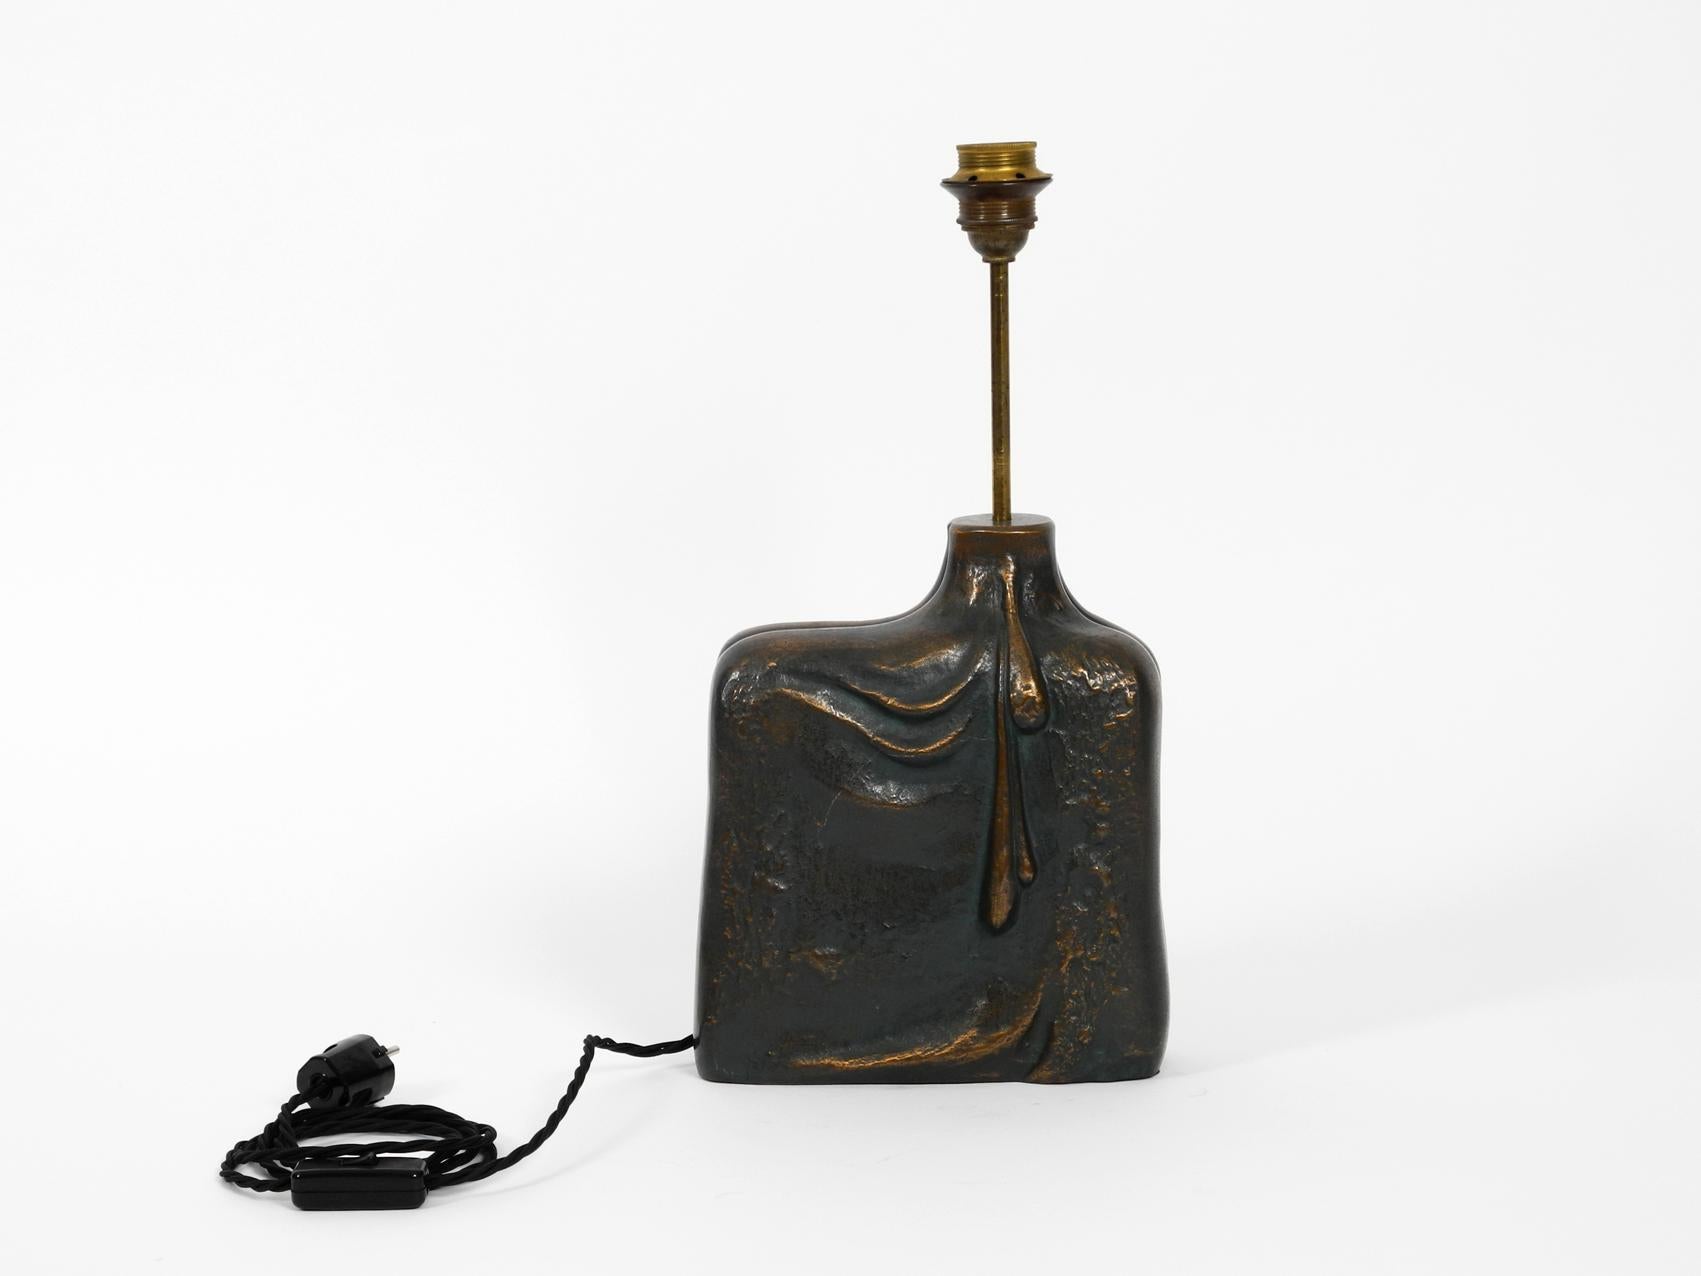 Très élégante lampe de table des années 1960 en bronze. Magnifique dessin organique très noble avec une figure féminine à l'avant et des gouttes d'eau à l'arrière. La base de la lampe est entièrement réalisée en bronze lourd. Poids d'environ 7 kg,